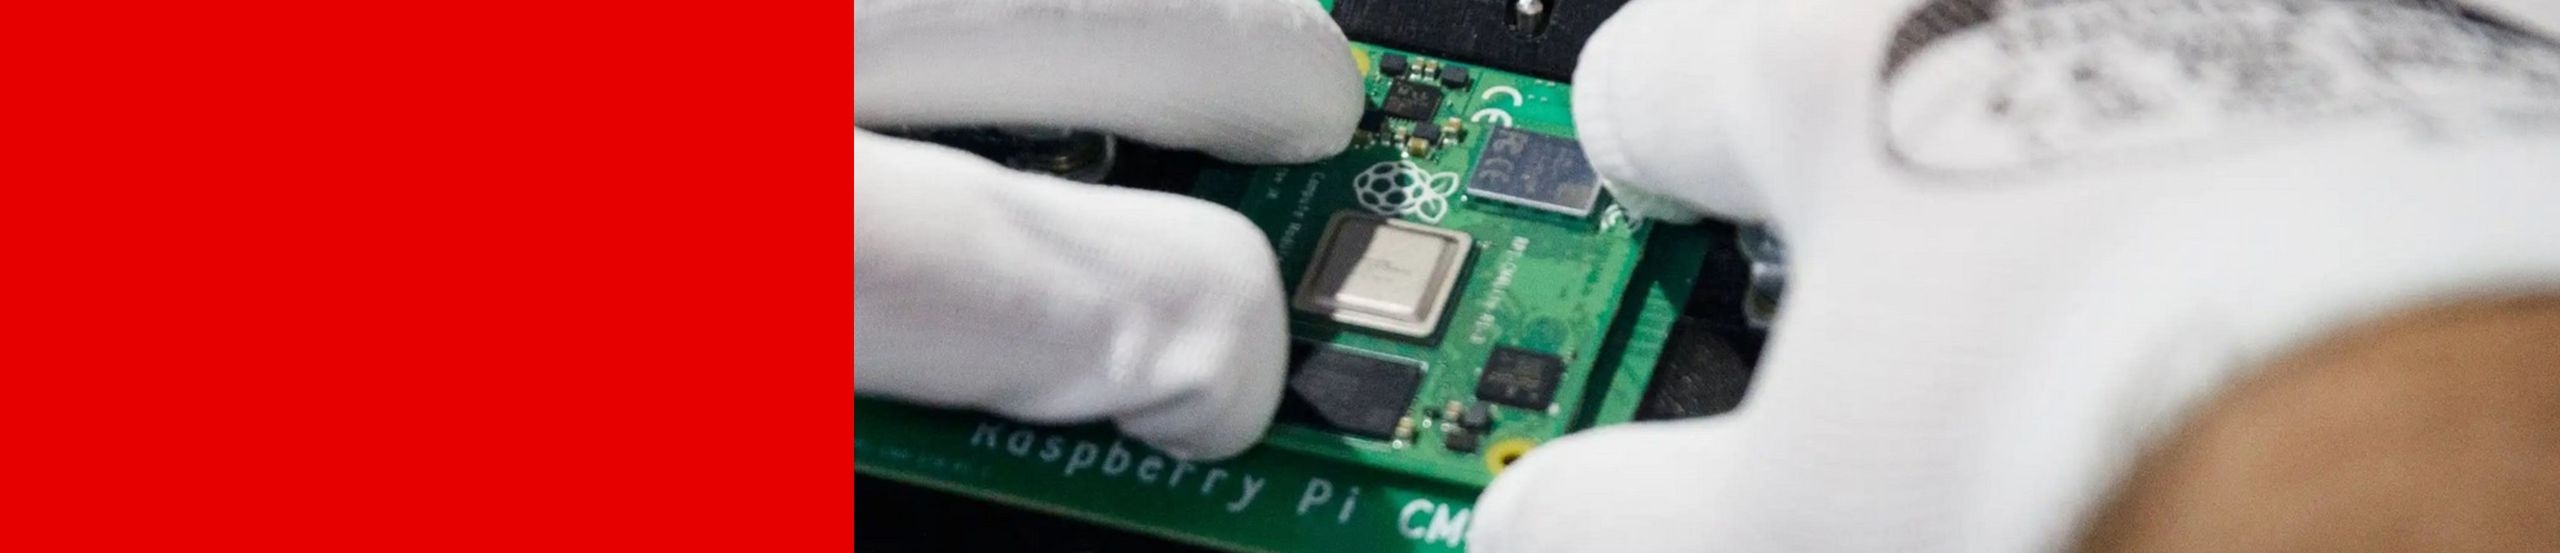 Zwei Hände in antistatischen Handschuhen setzen die Platine eines Raspberry Pi CM in ein anderes Gerät ein.